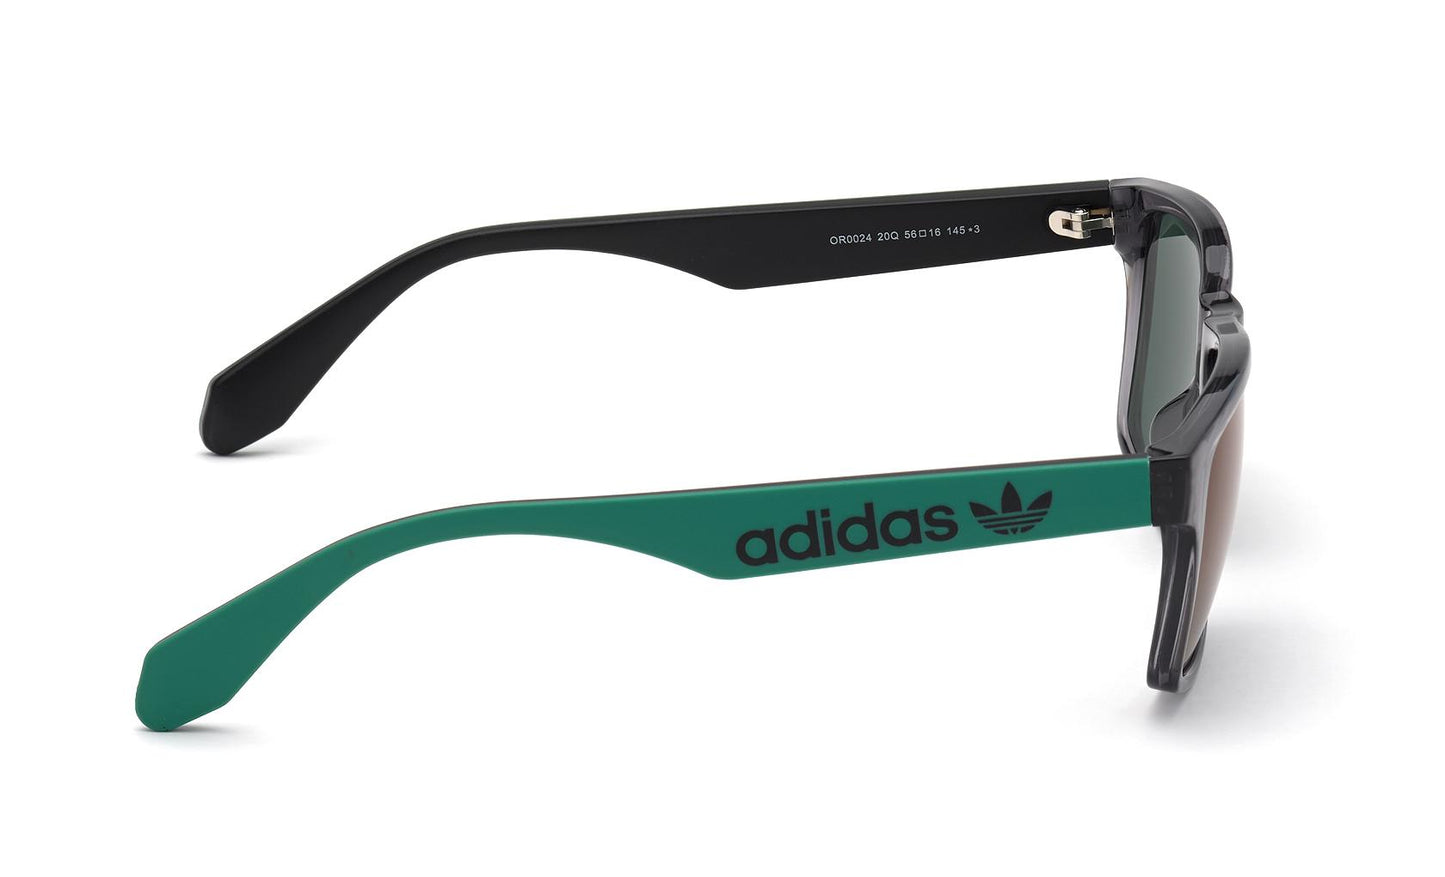 Adidas Originals Sunglasses OR0024 20Q